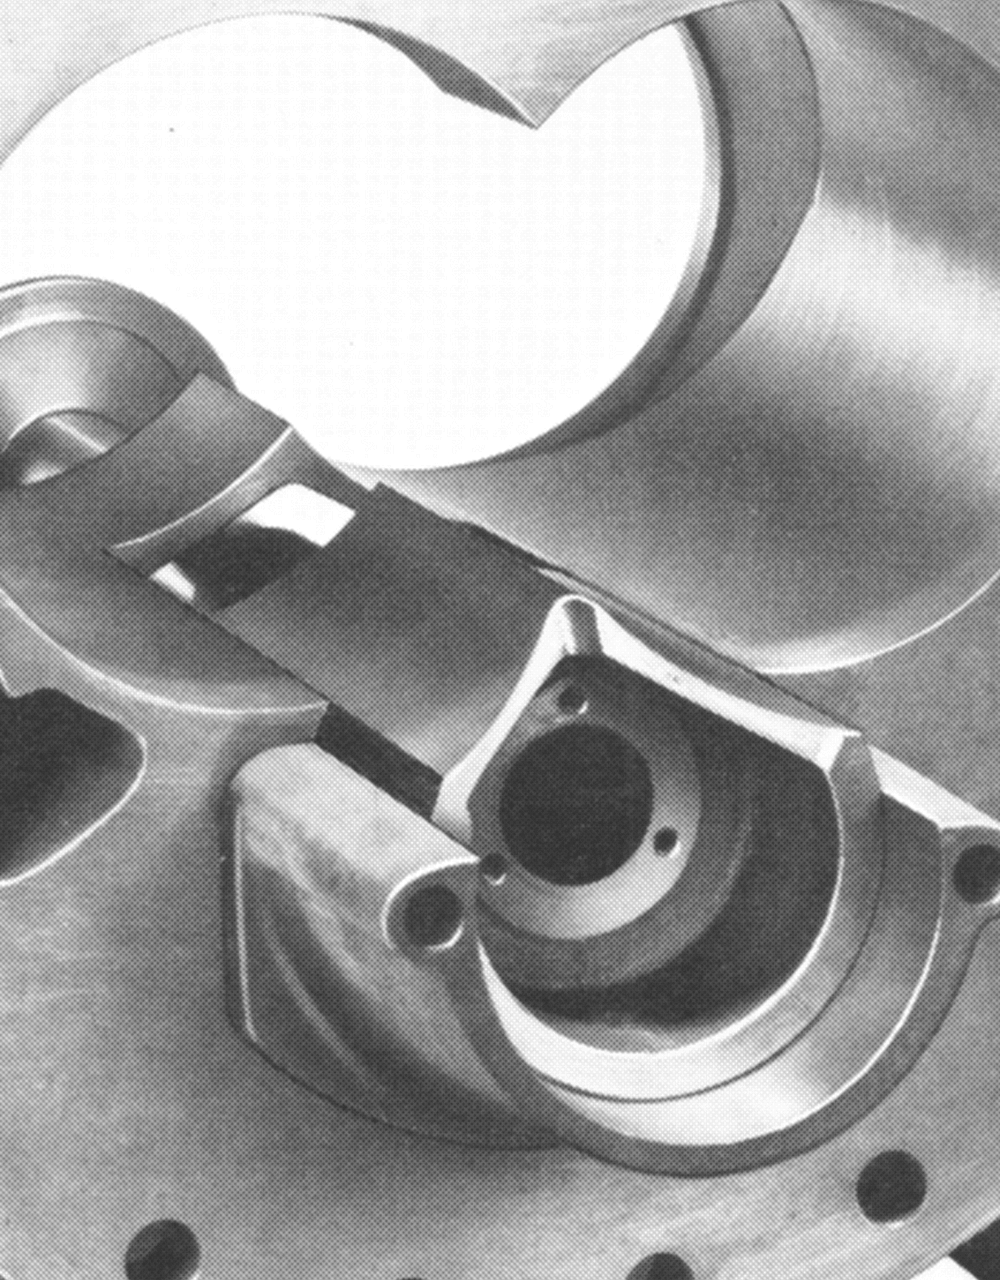 Obrázok jedného z prvých skrutkových kompresorov so vstrekovaním oleja pre chladiarenský priemysel